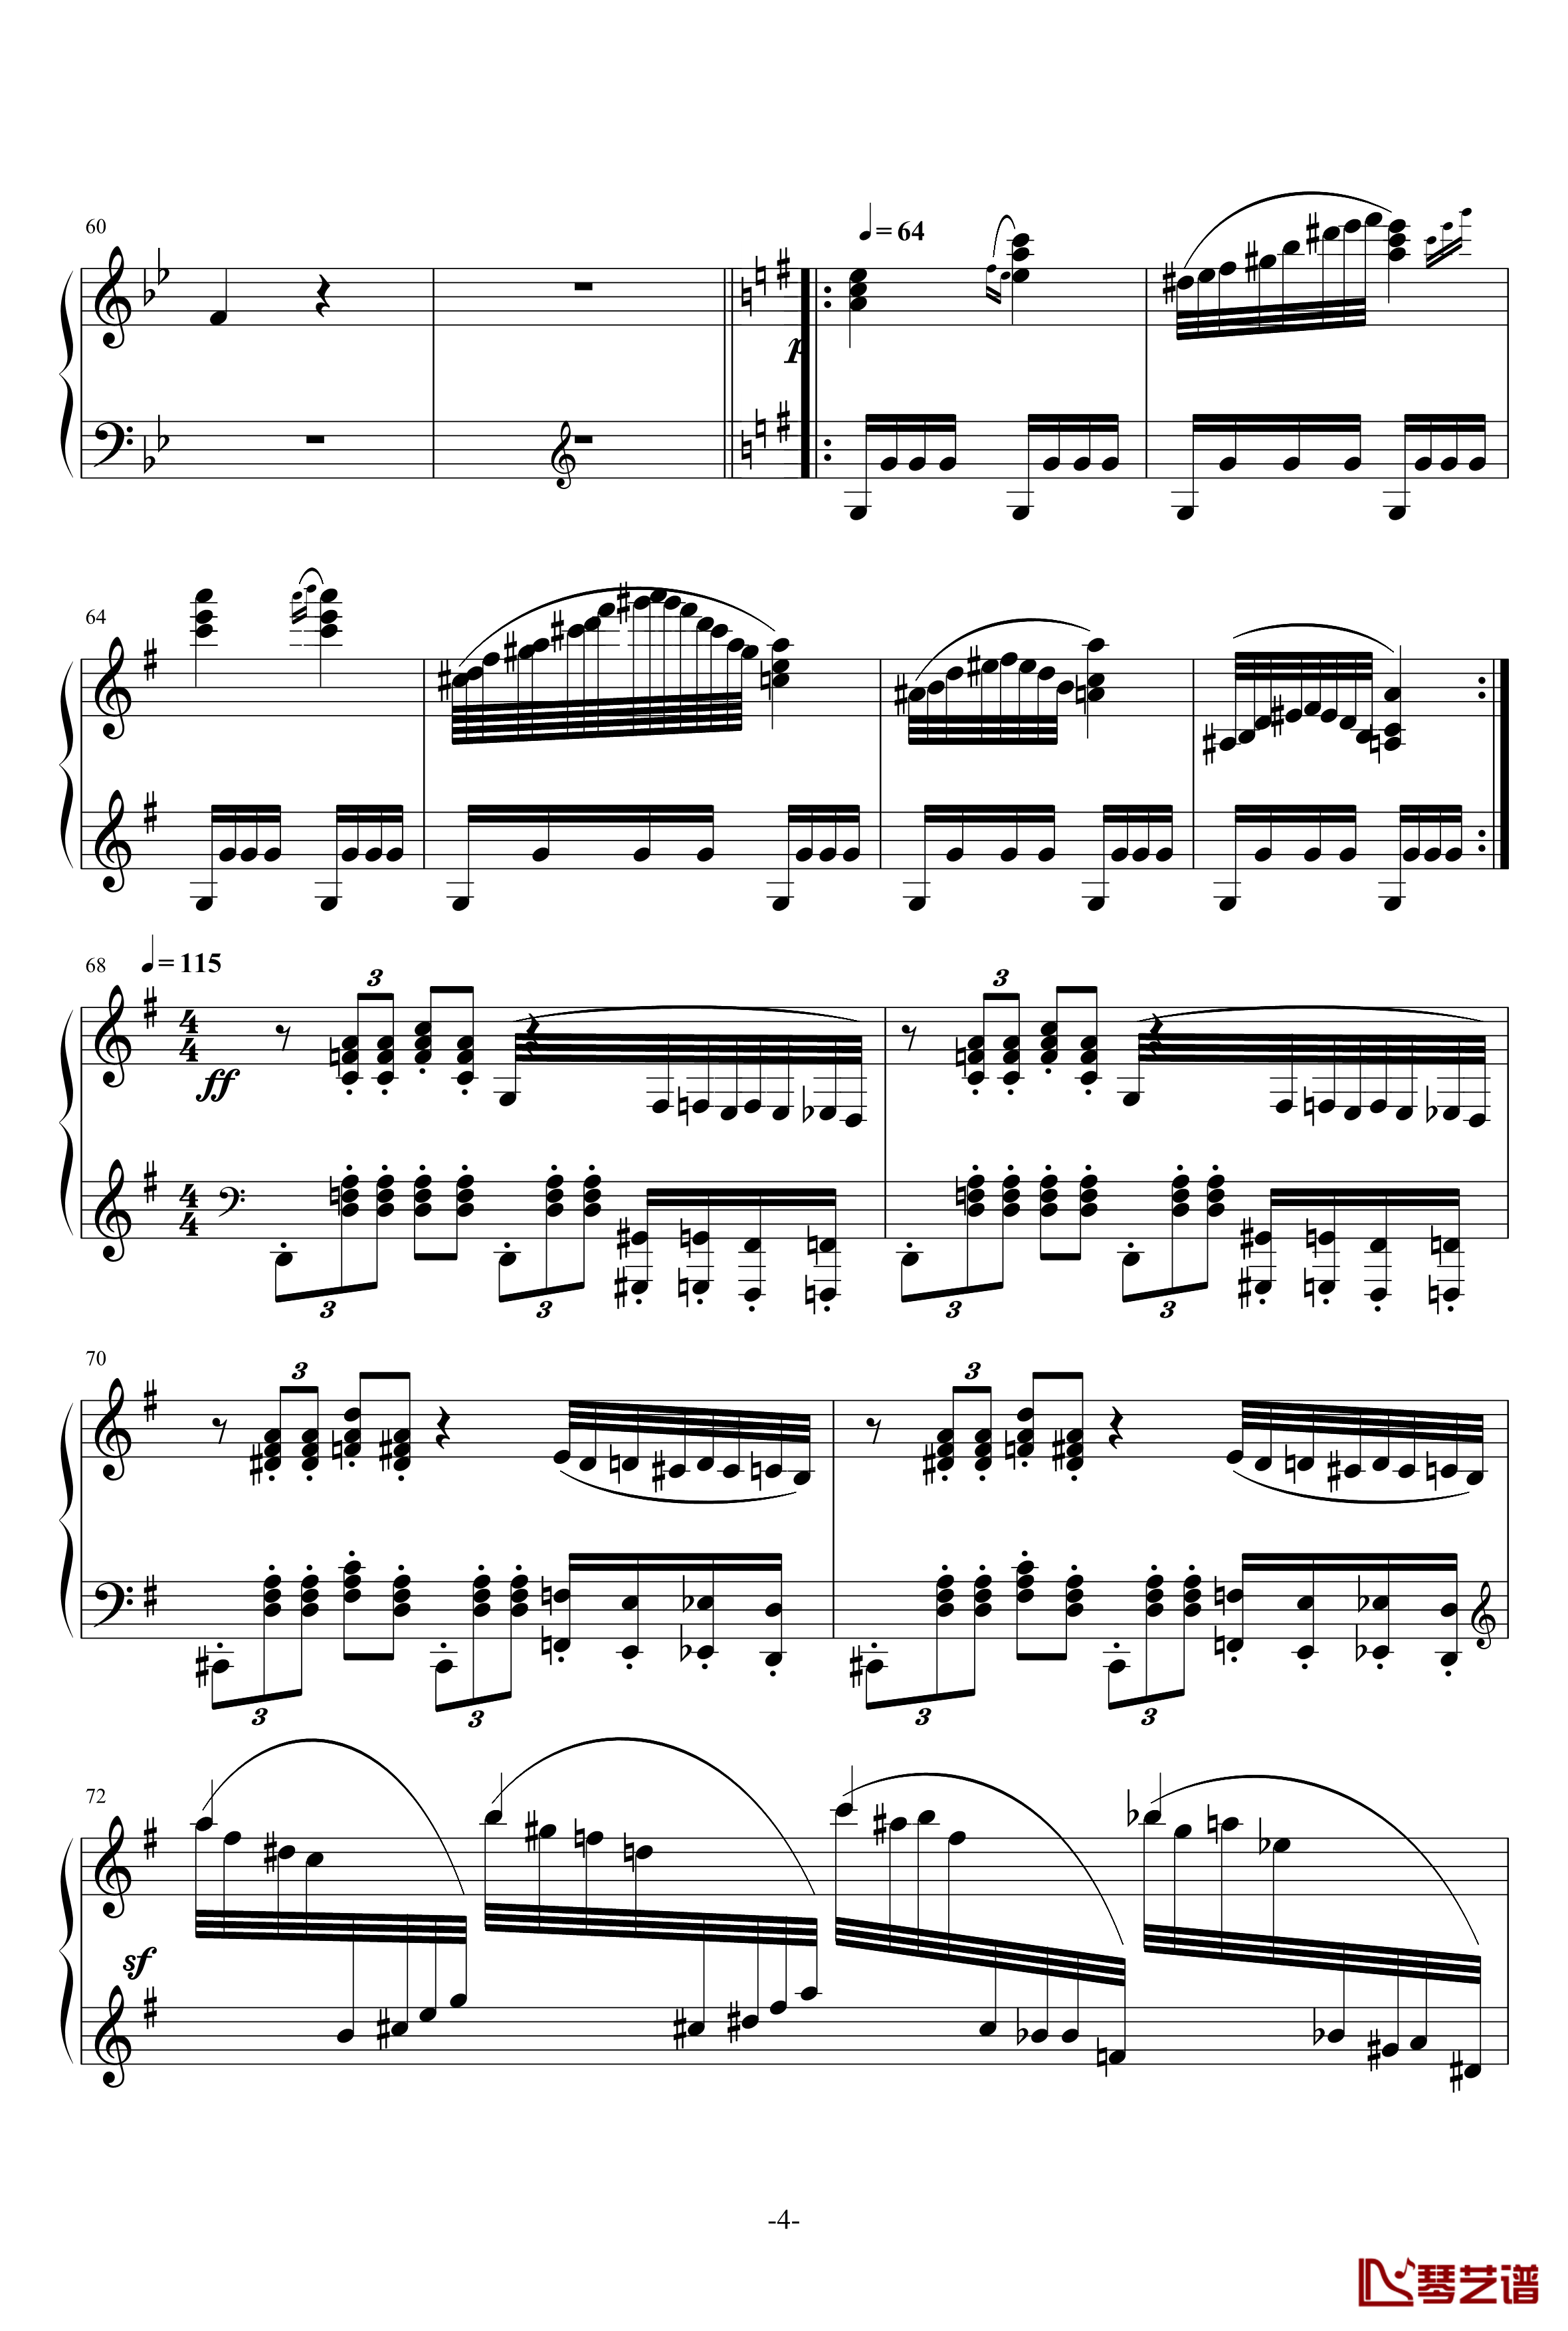 小温狂想曲 3钢琴谱—具有匈牙利狂想曲风格的一曲。—我的代表作-一个球4